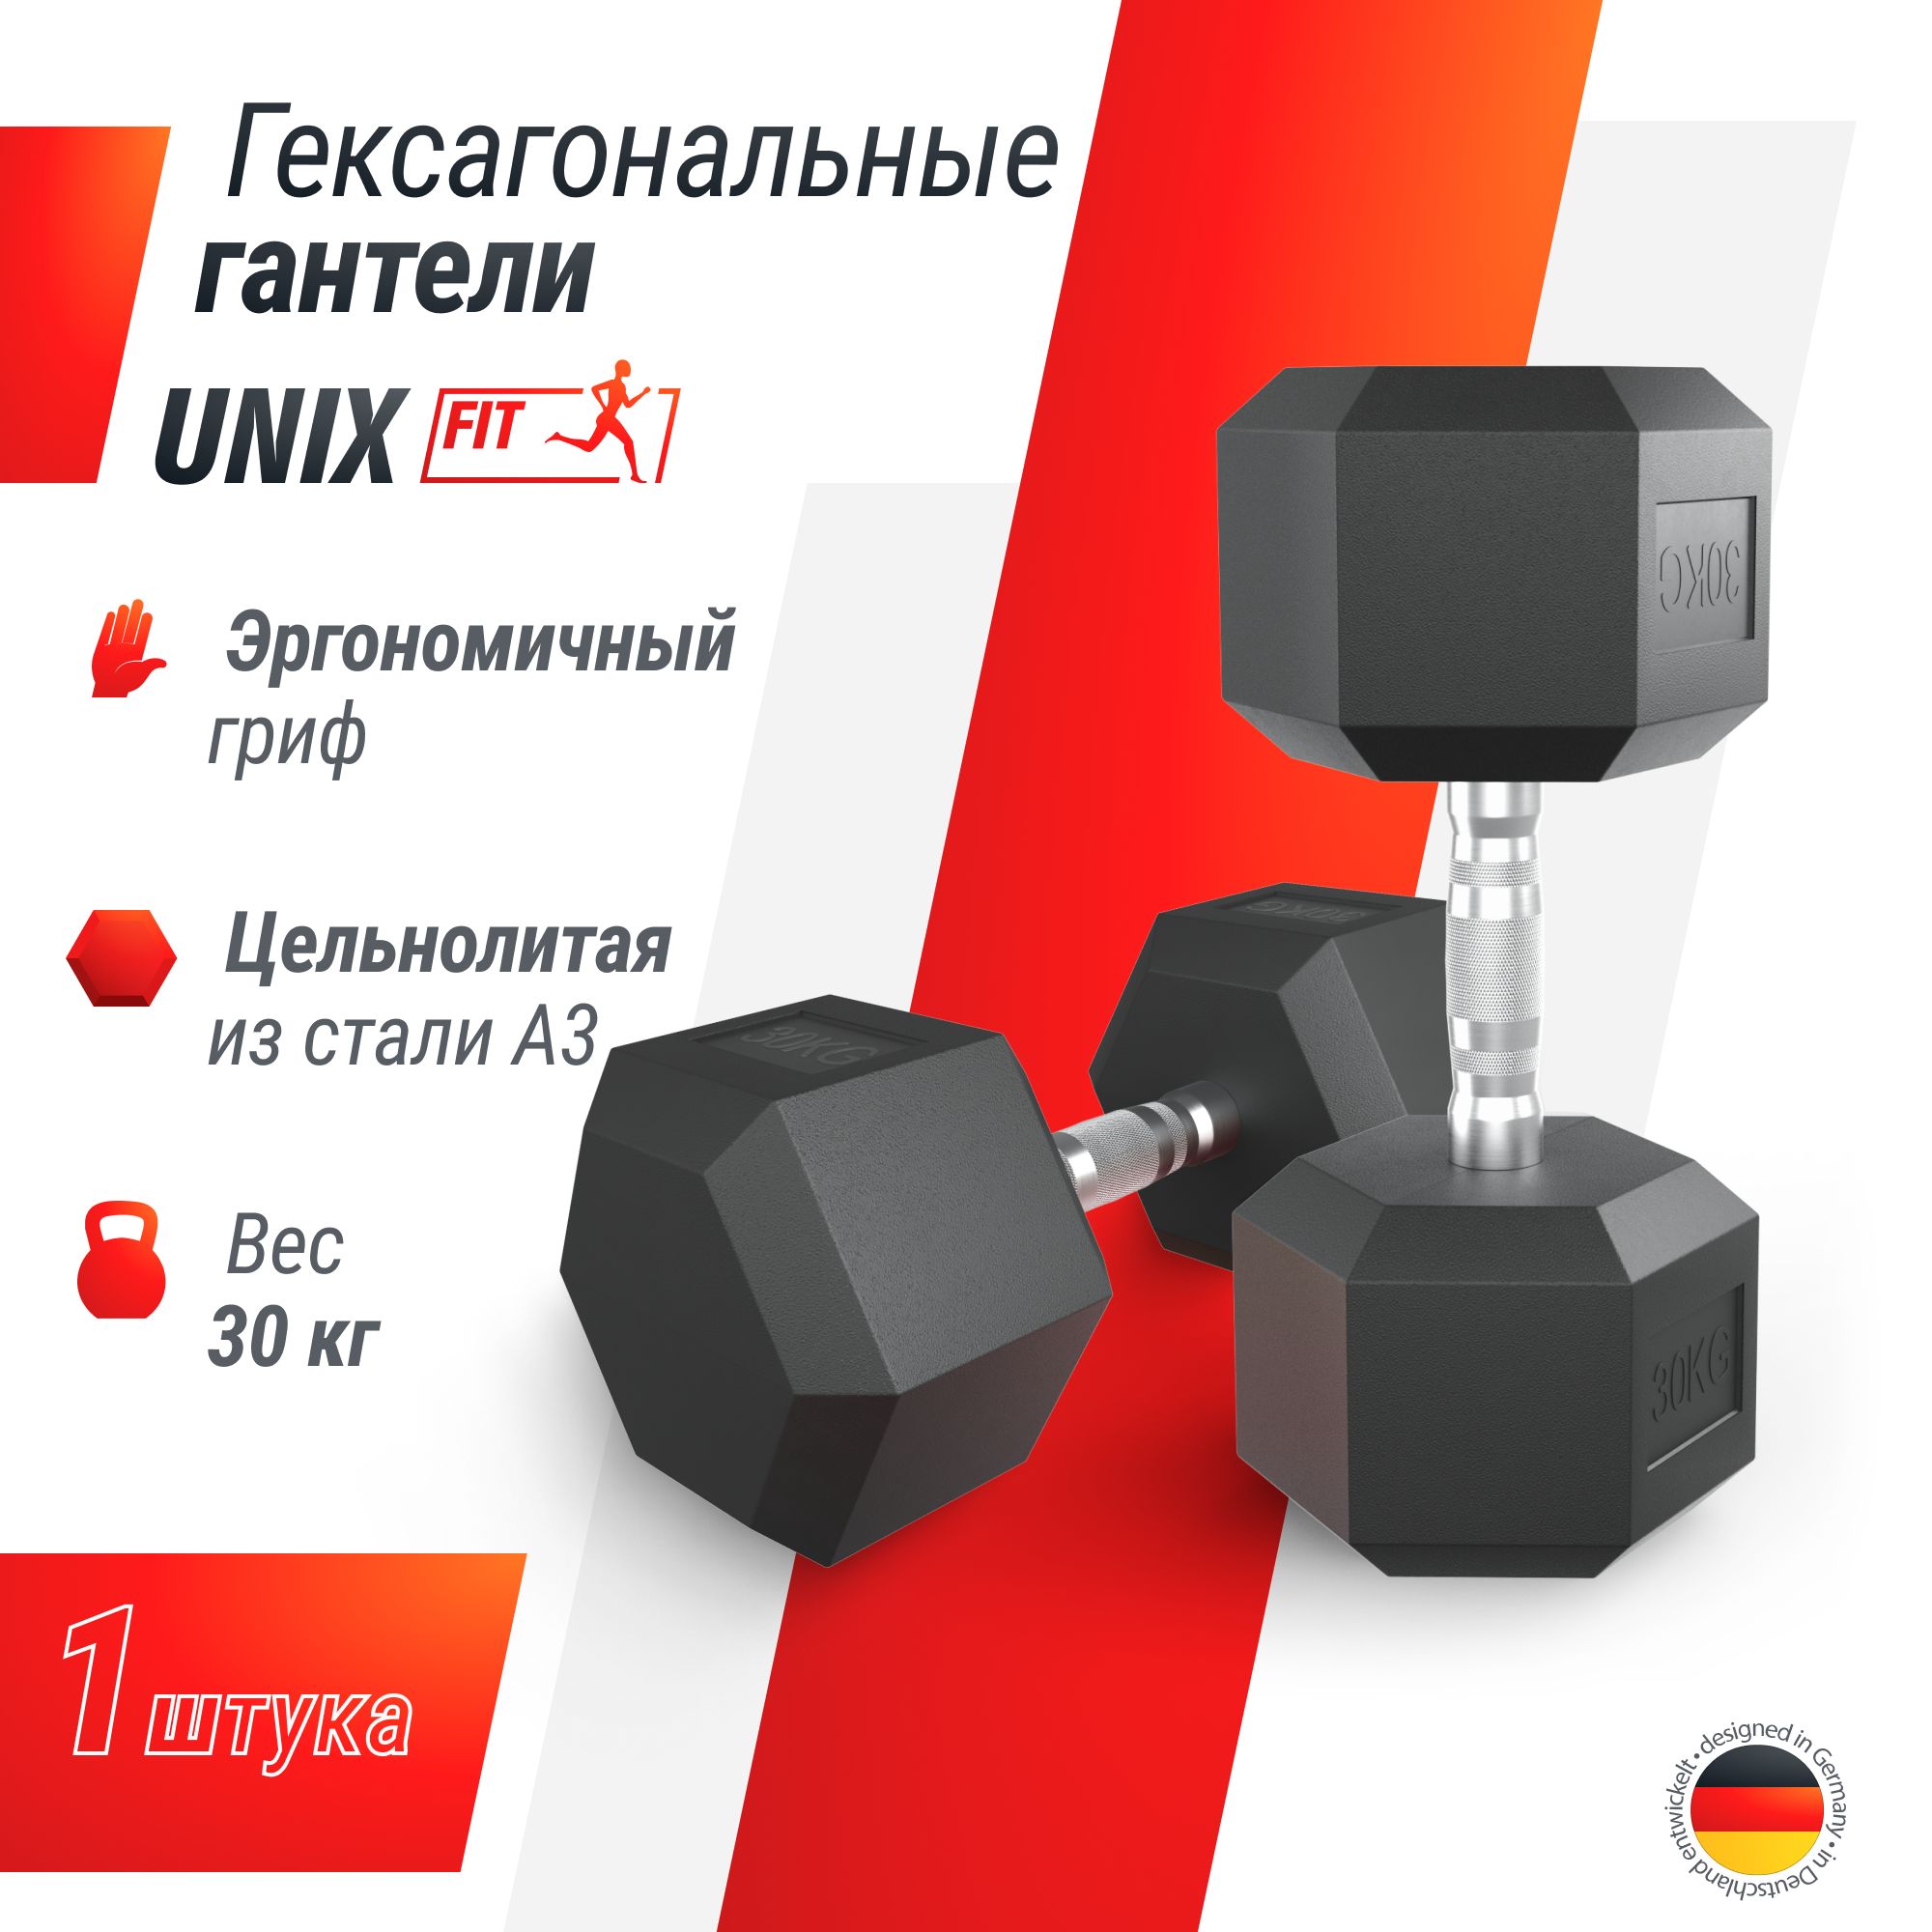 Гантель гексагональная UNIX Fit обрезиненная 30 кг шт